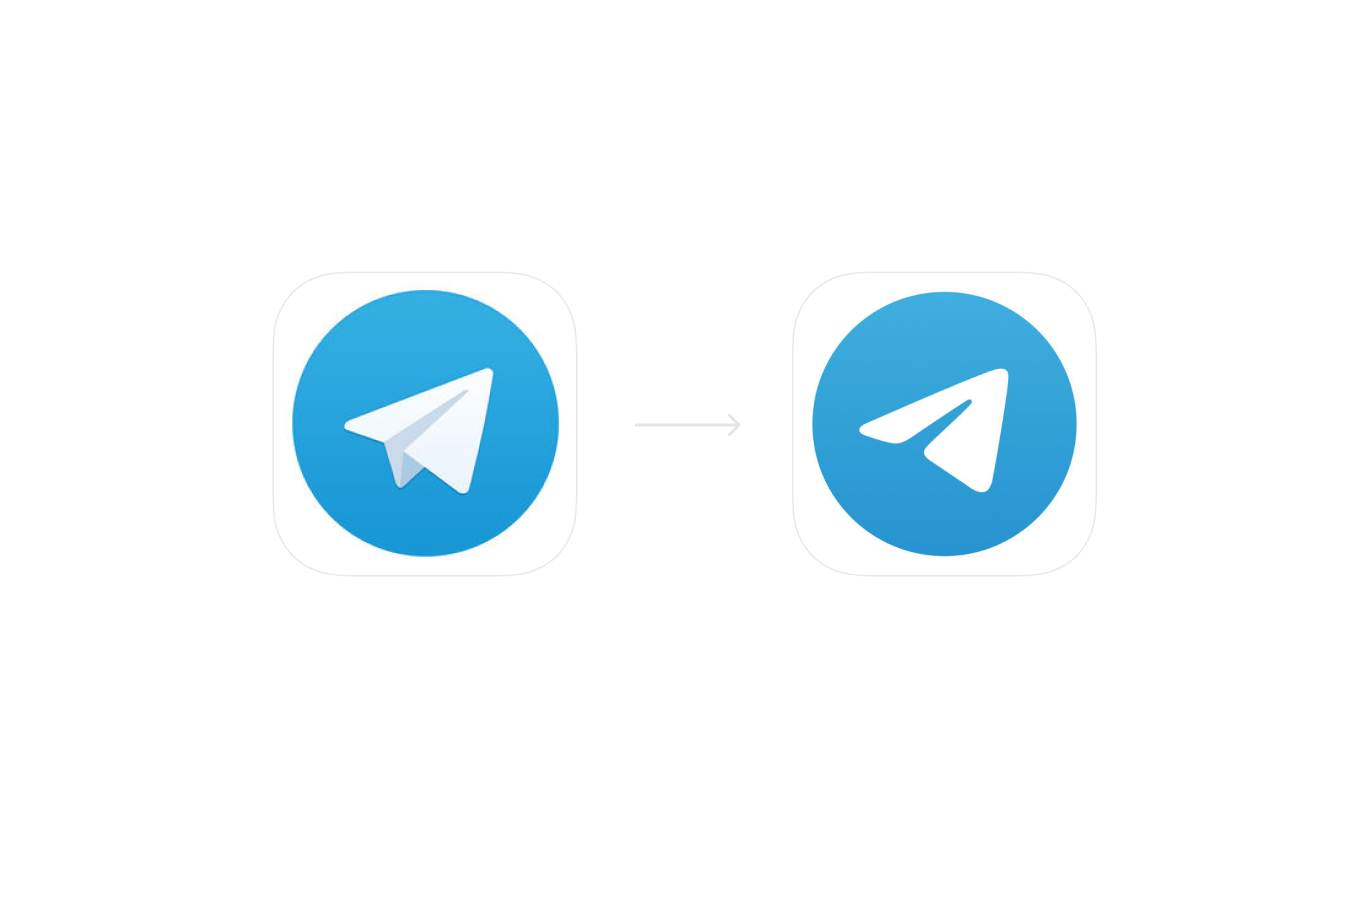 Модерна телеграмм. Значе телеграм. Иконка телеграмм. Логотип Telegram. Пиктограмма телеграмм.